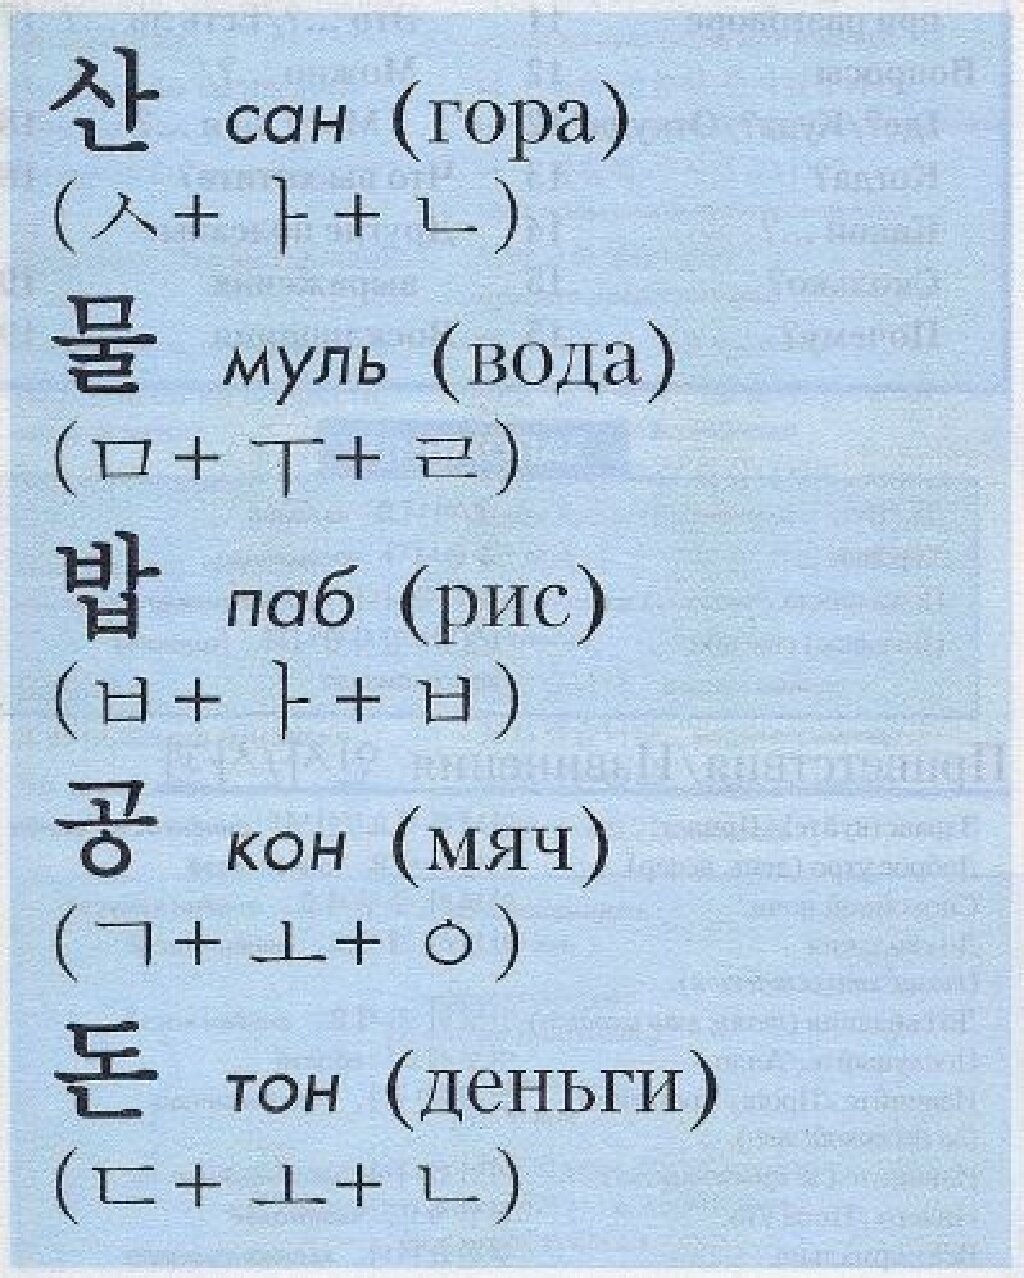 Бесплатное изучение корейского языка с нуля. Учить корейский язык с нуля. Как научить корейский язык. Корейские слова для начинающих с переводом.